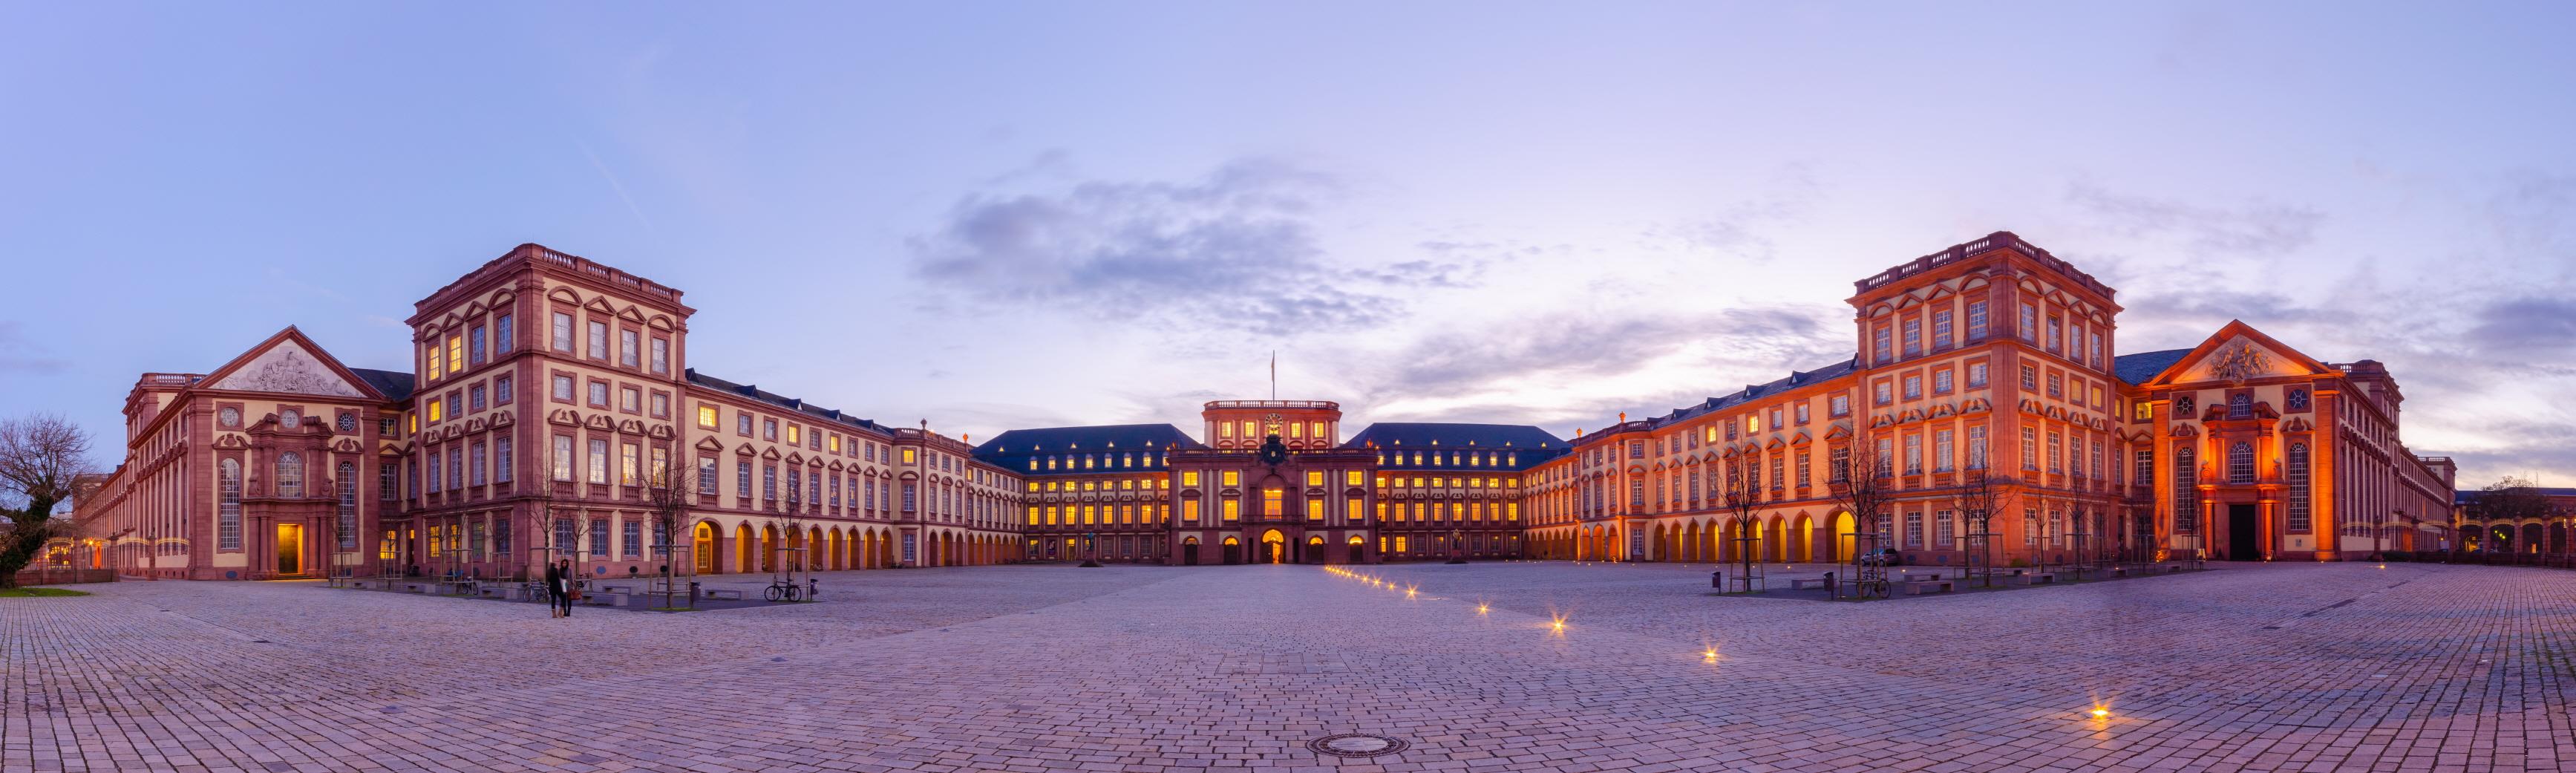 만하임 궁전  Mannheim Baroque Palace